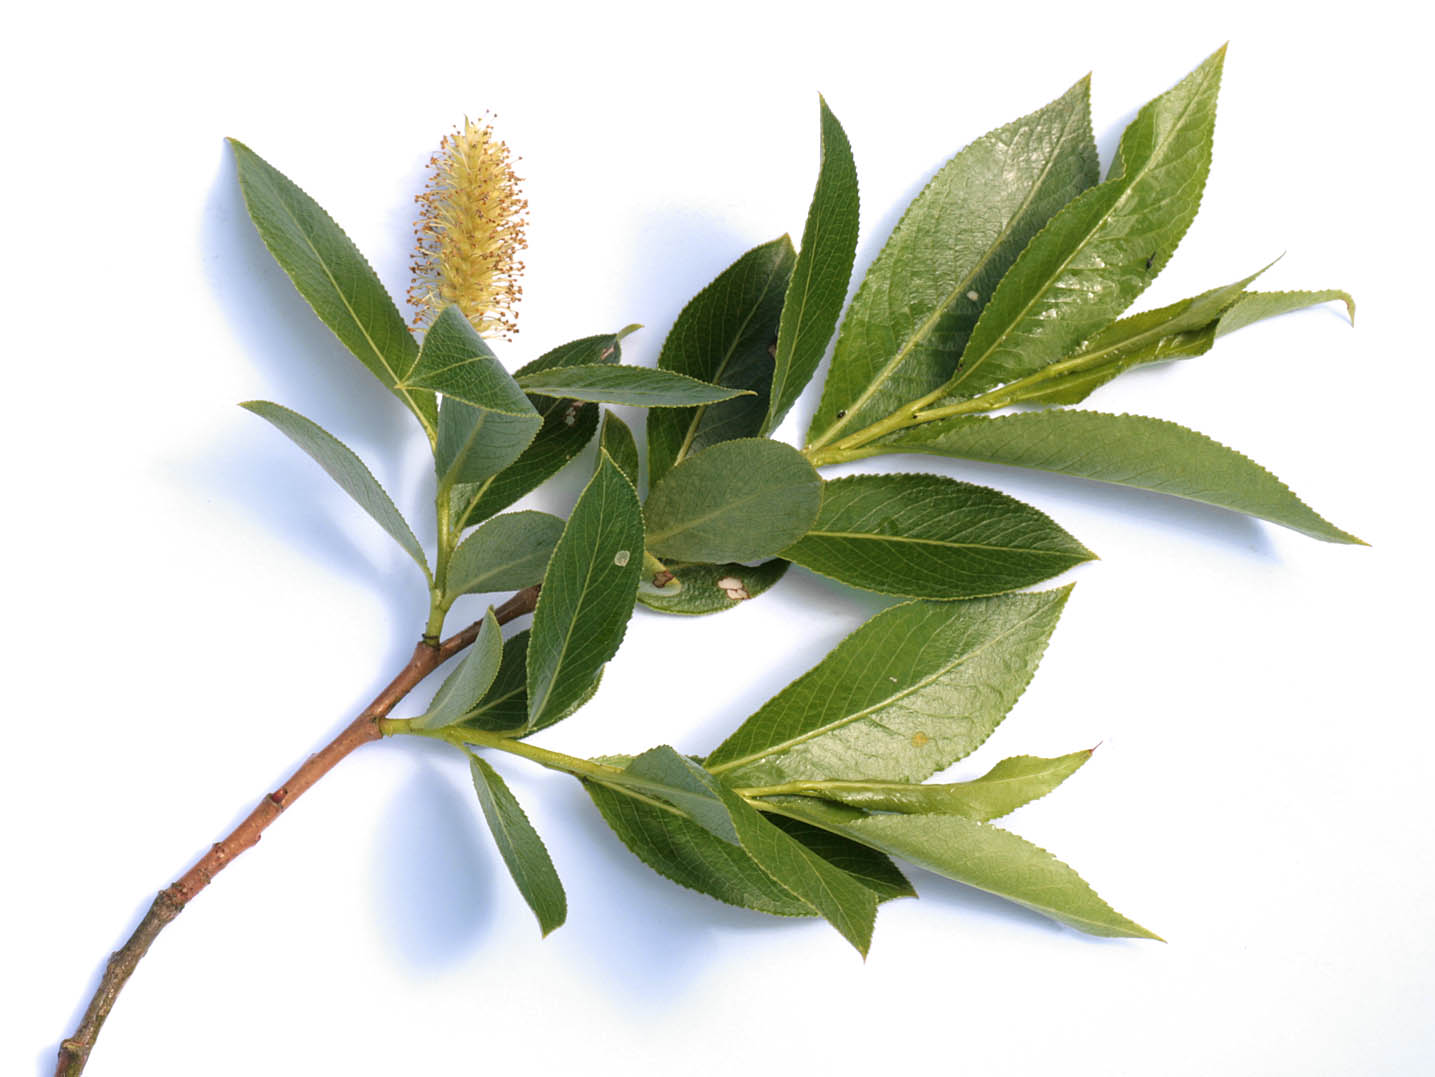 Salix tenuijulis